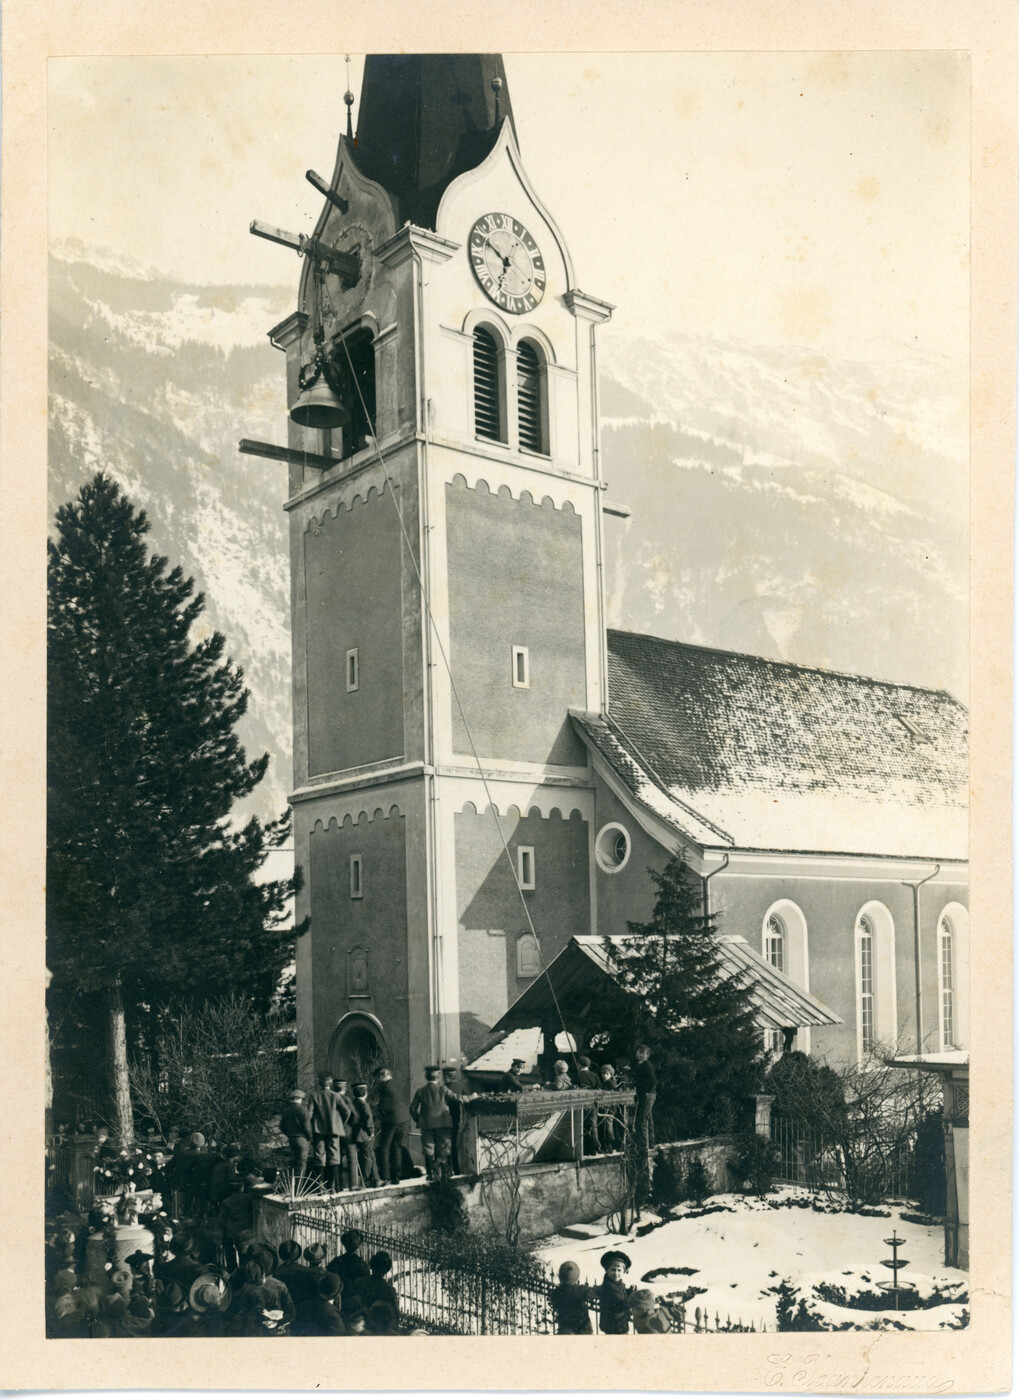 Neues Geläut: Im Januar 1905 werden die Glocken des neuen Geläutes aufgezogen.